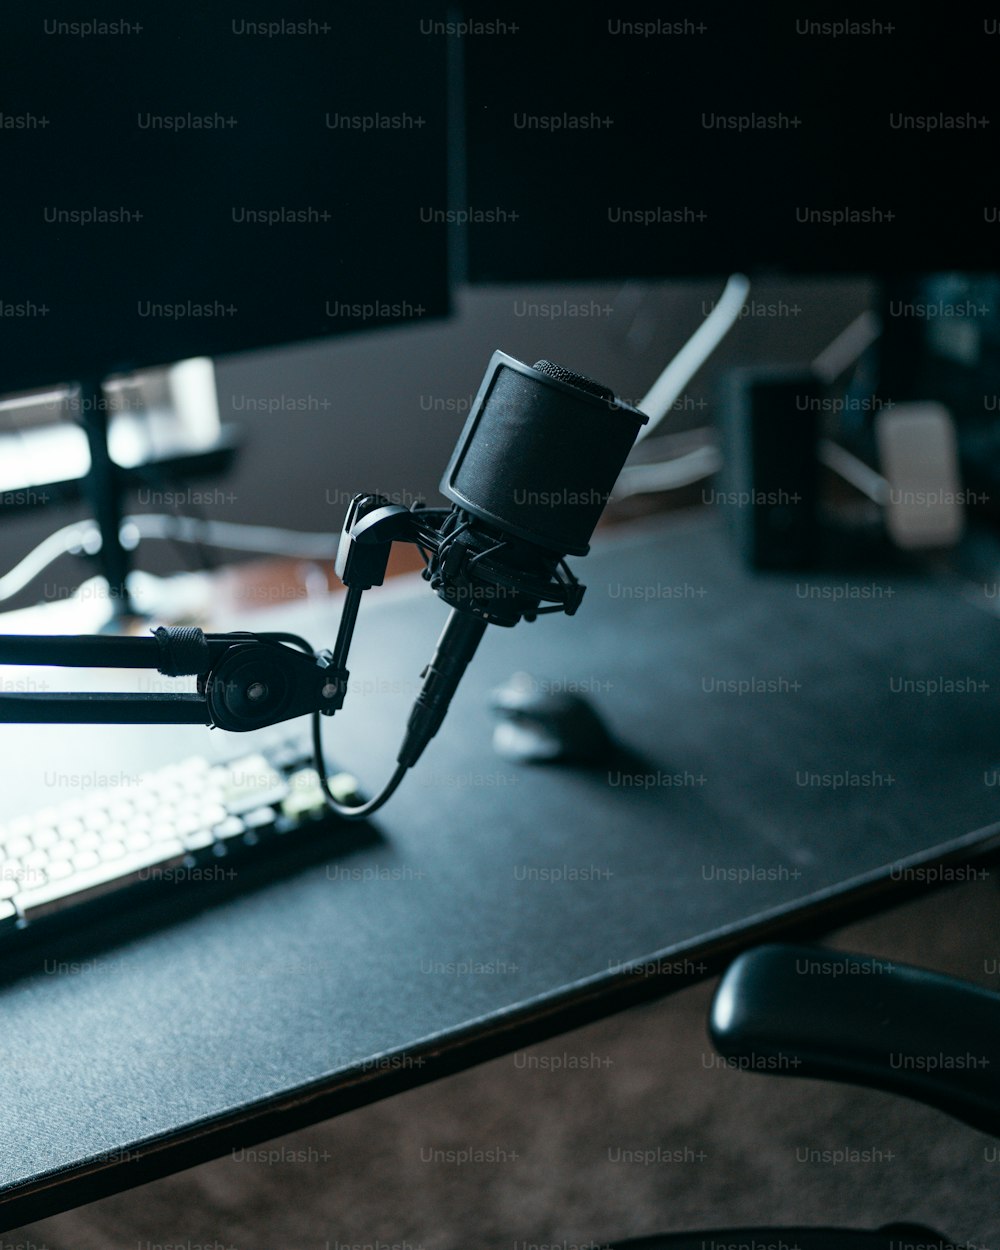 책상 위의 랩톱 컴퓨터에 연결된 마이크